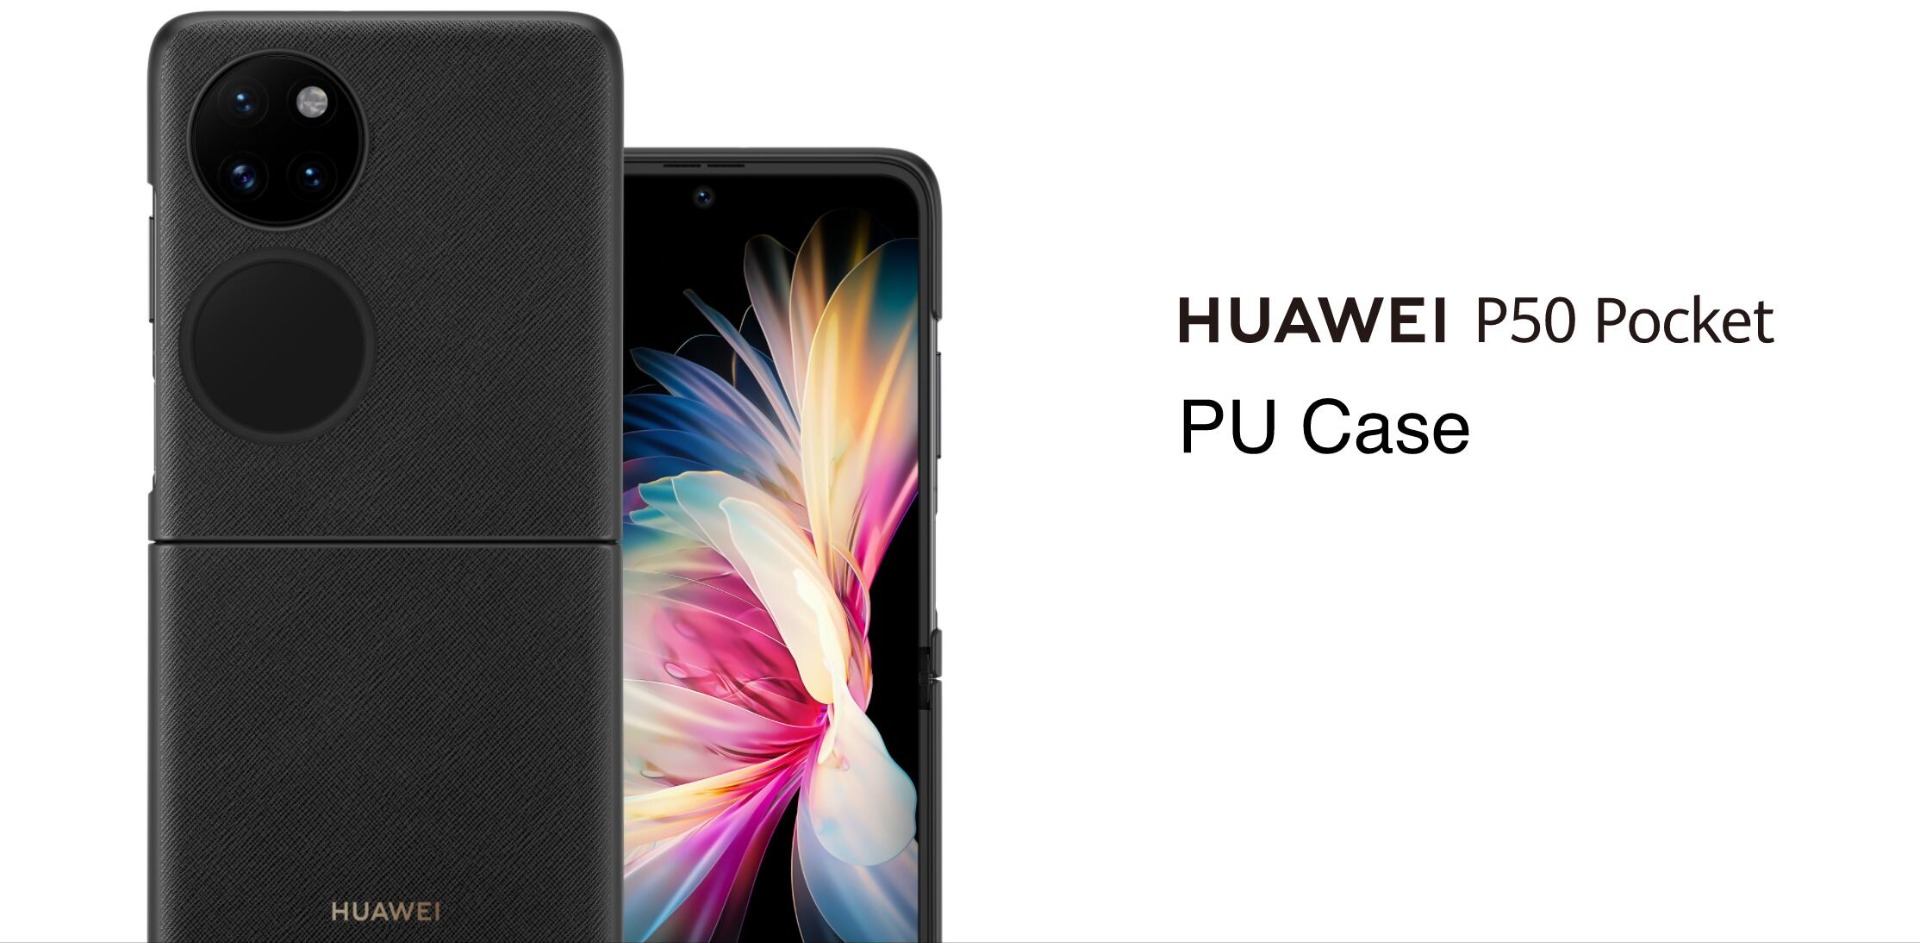 Huawei P50 Pocket PU Case